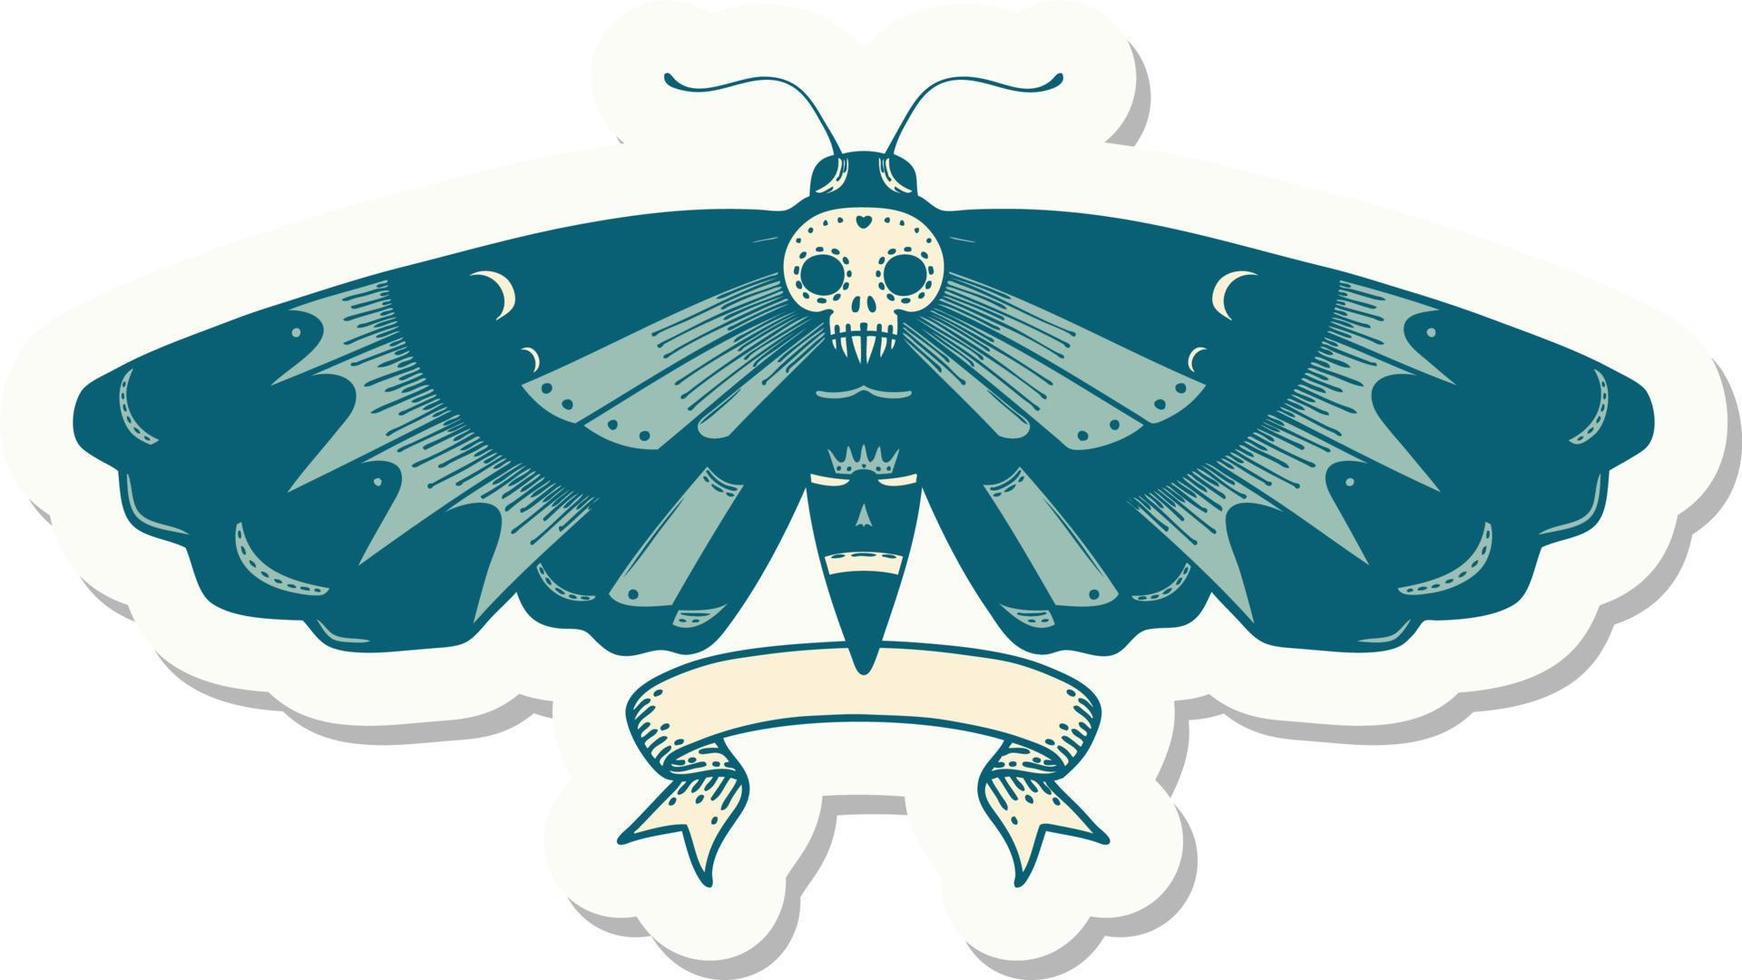 adesivo de estilo de tatuagem com banner de uma mariposa de cabeça de morte vetor